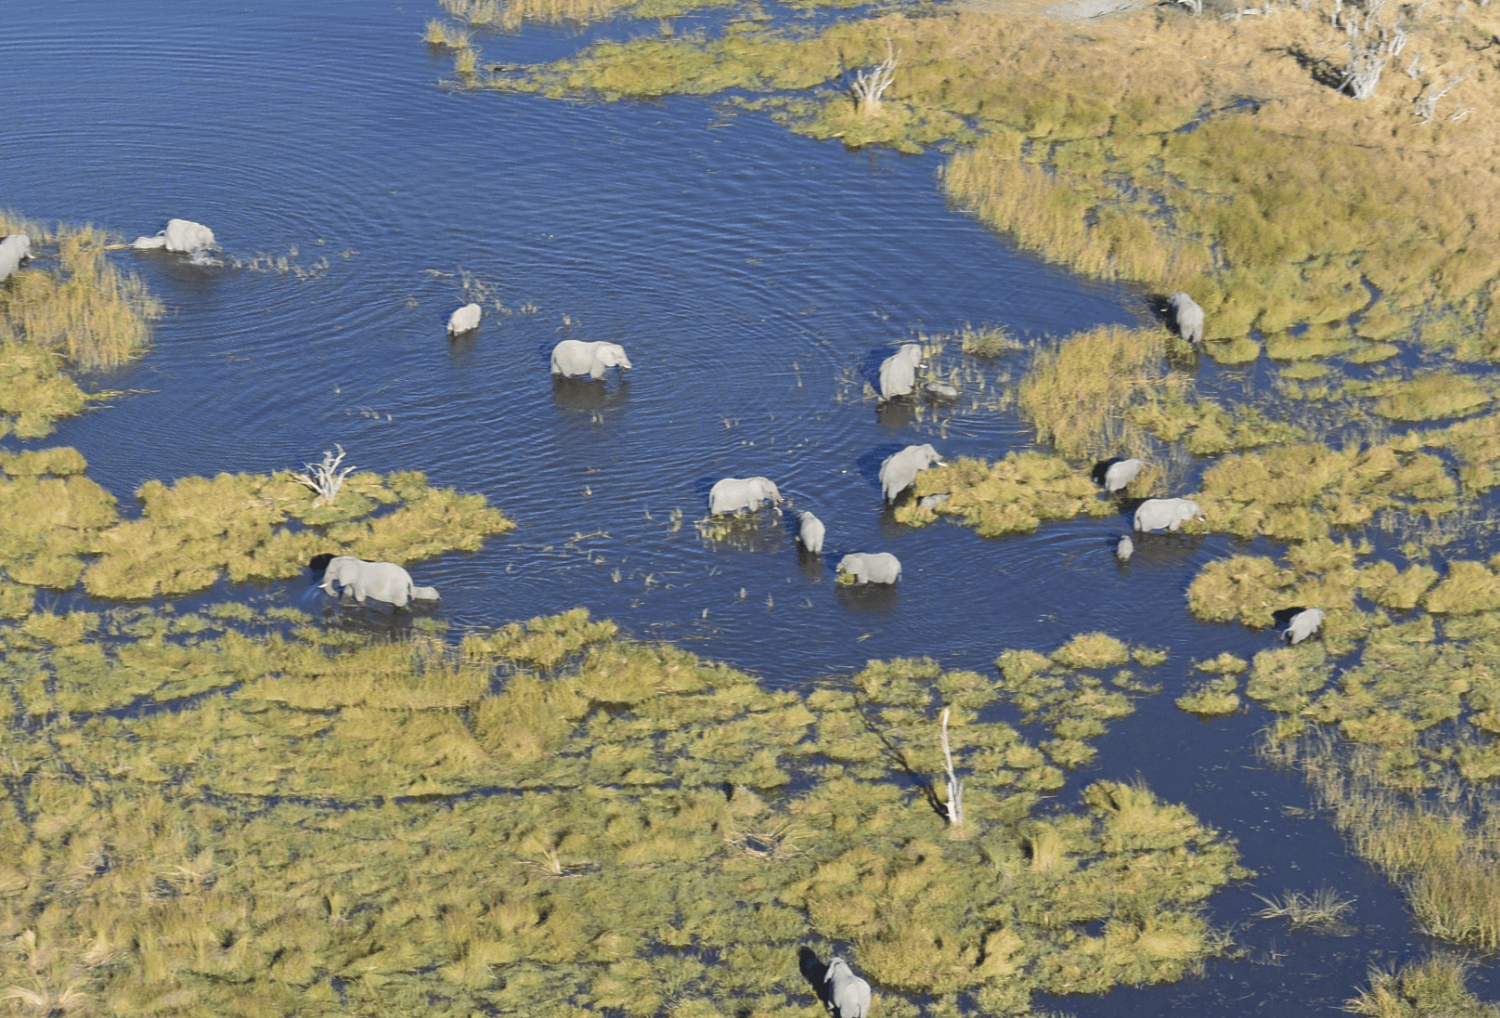 Botswana-10-safari-Okavango-delta